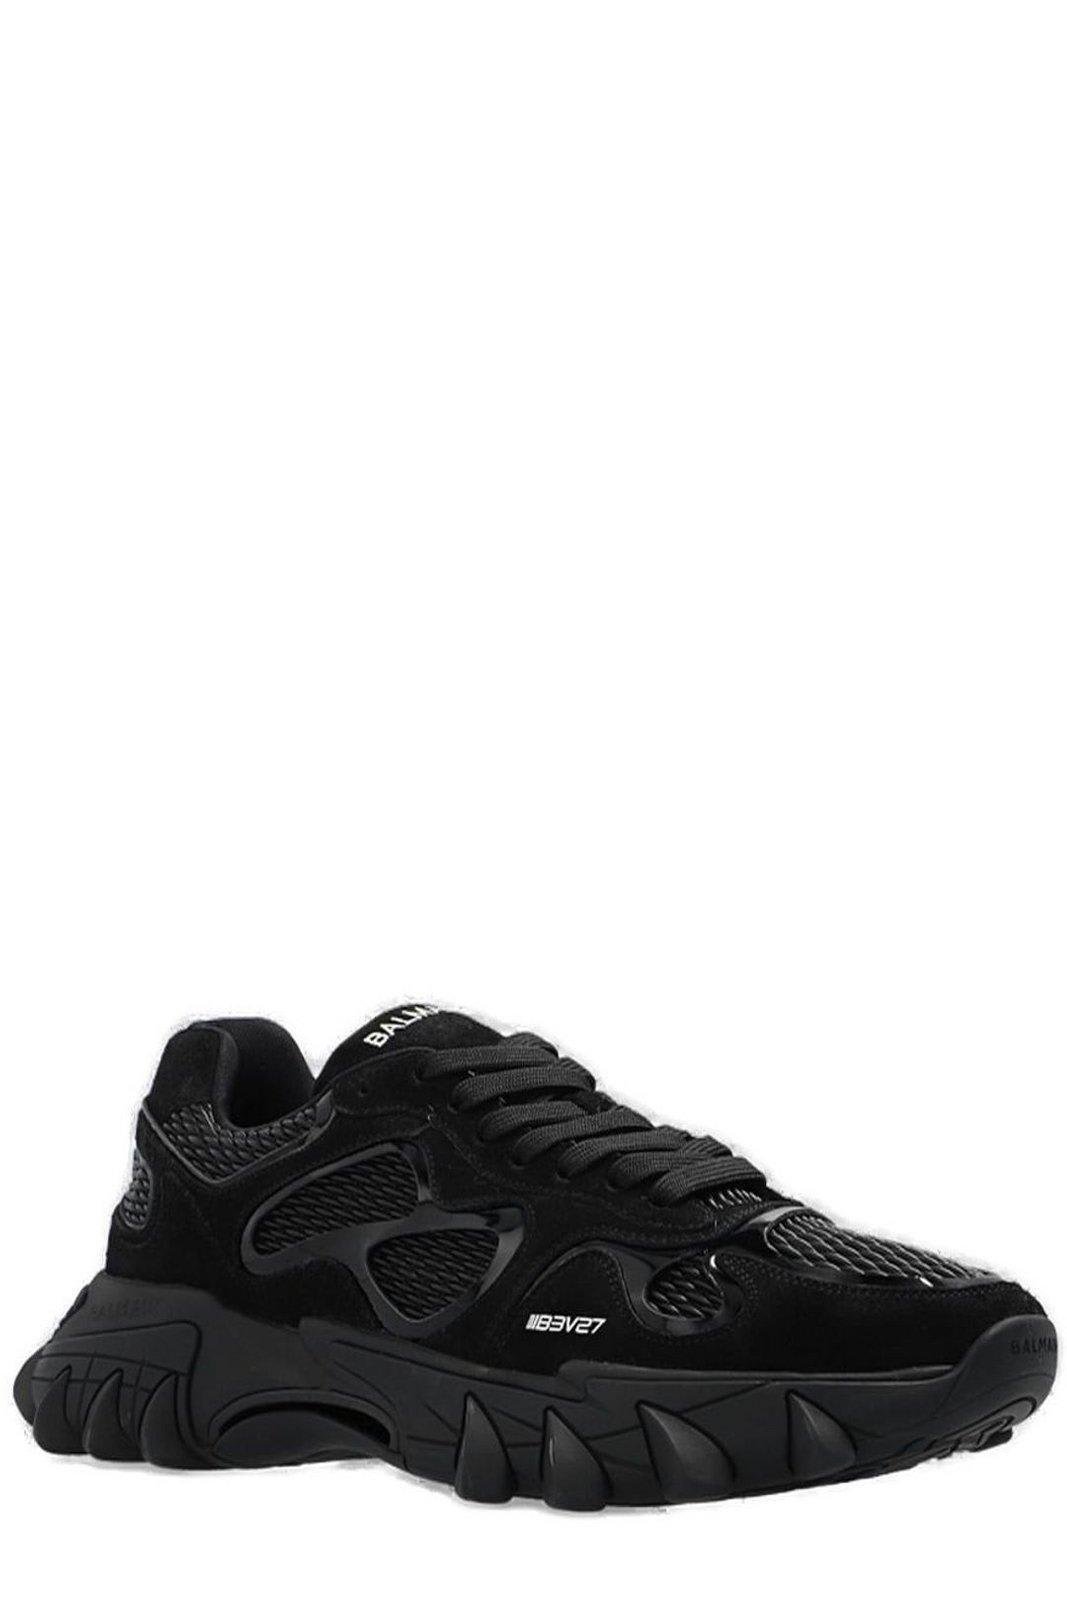 Balmain B-east Sneakers in Black | Lyst